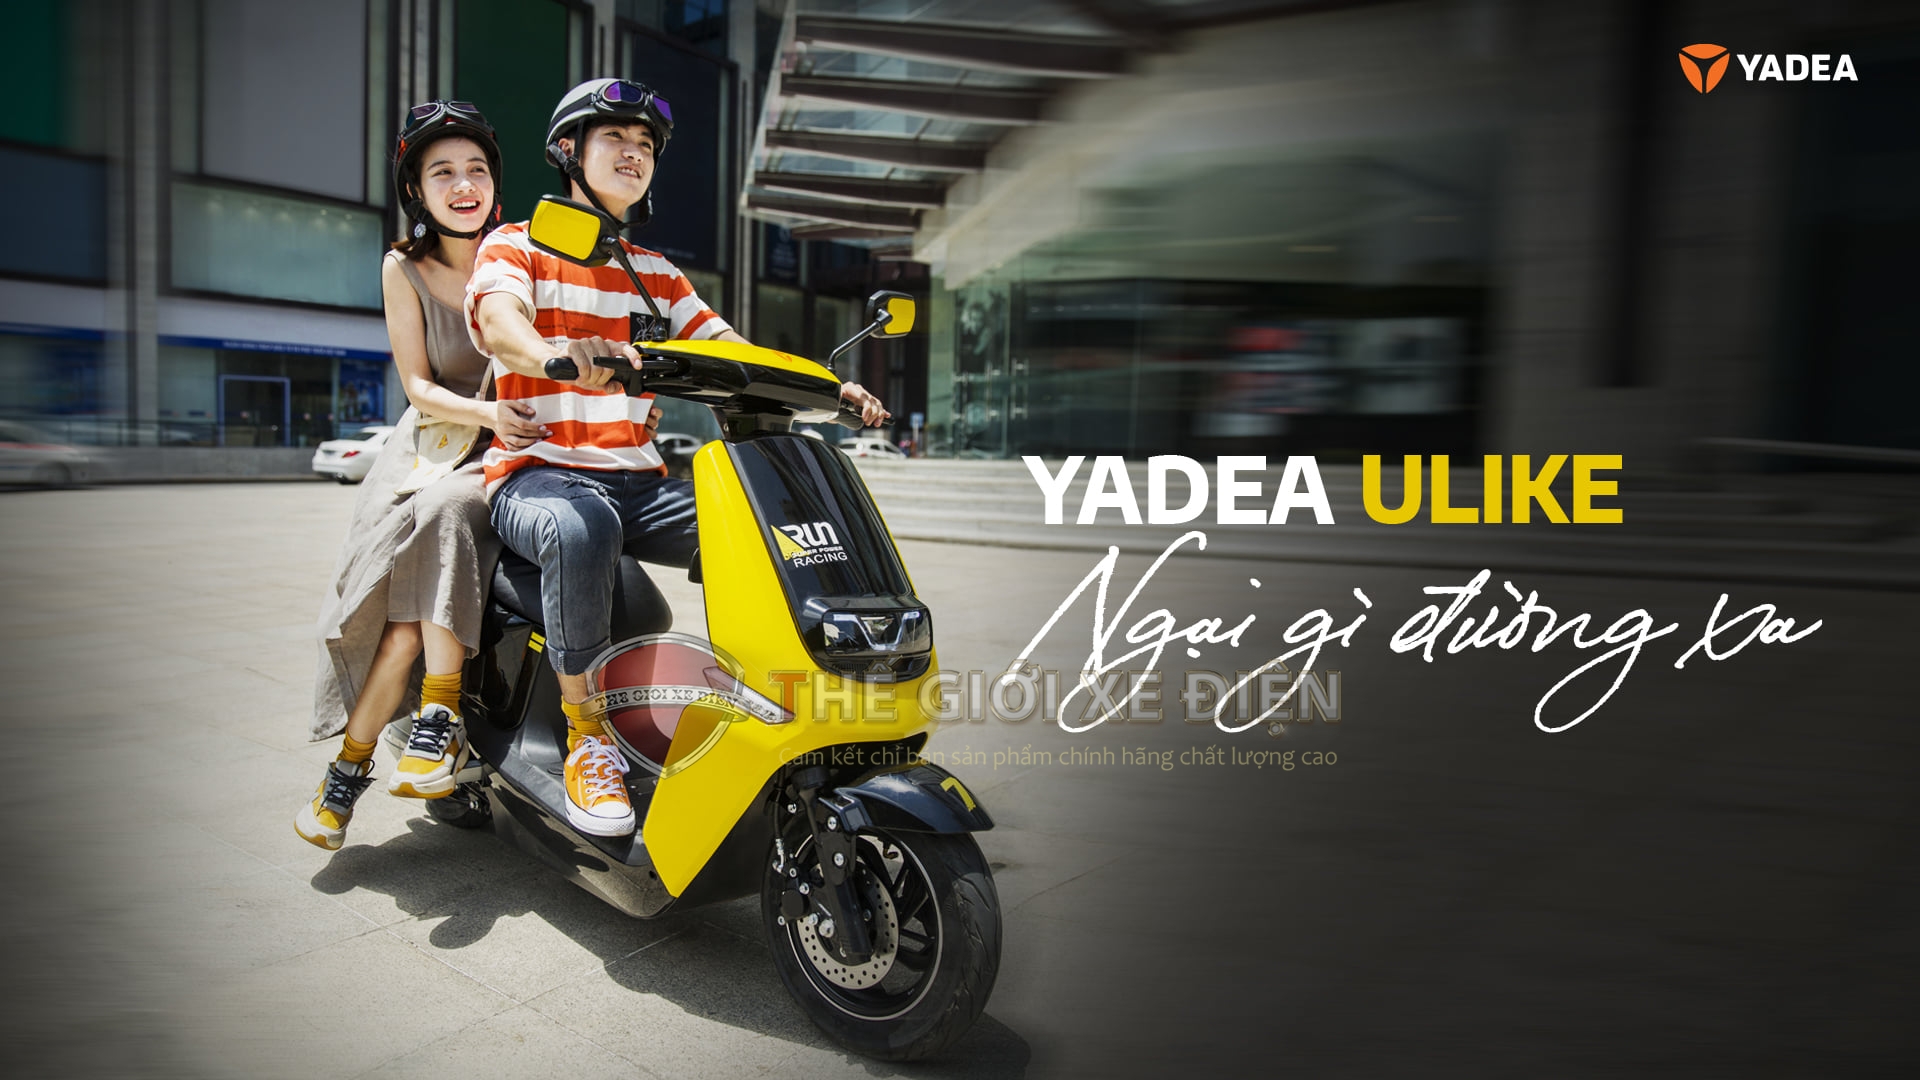 Xe máy điện Yadea ULIKE Mẫu xe điện đỉnh cao cho mọi danh hiệu danh giá.